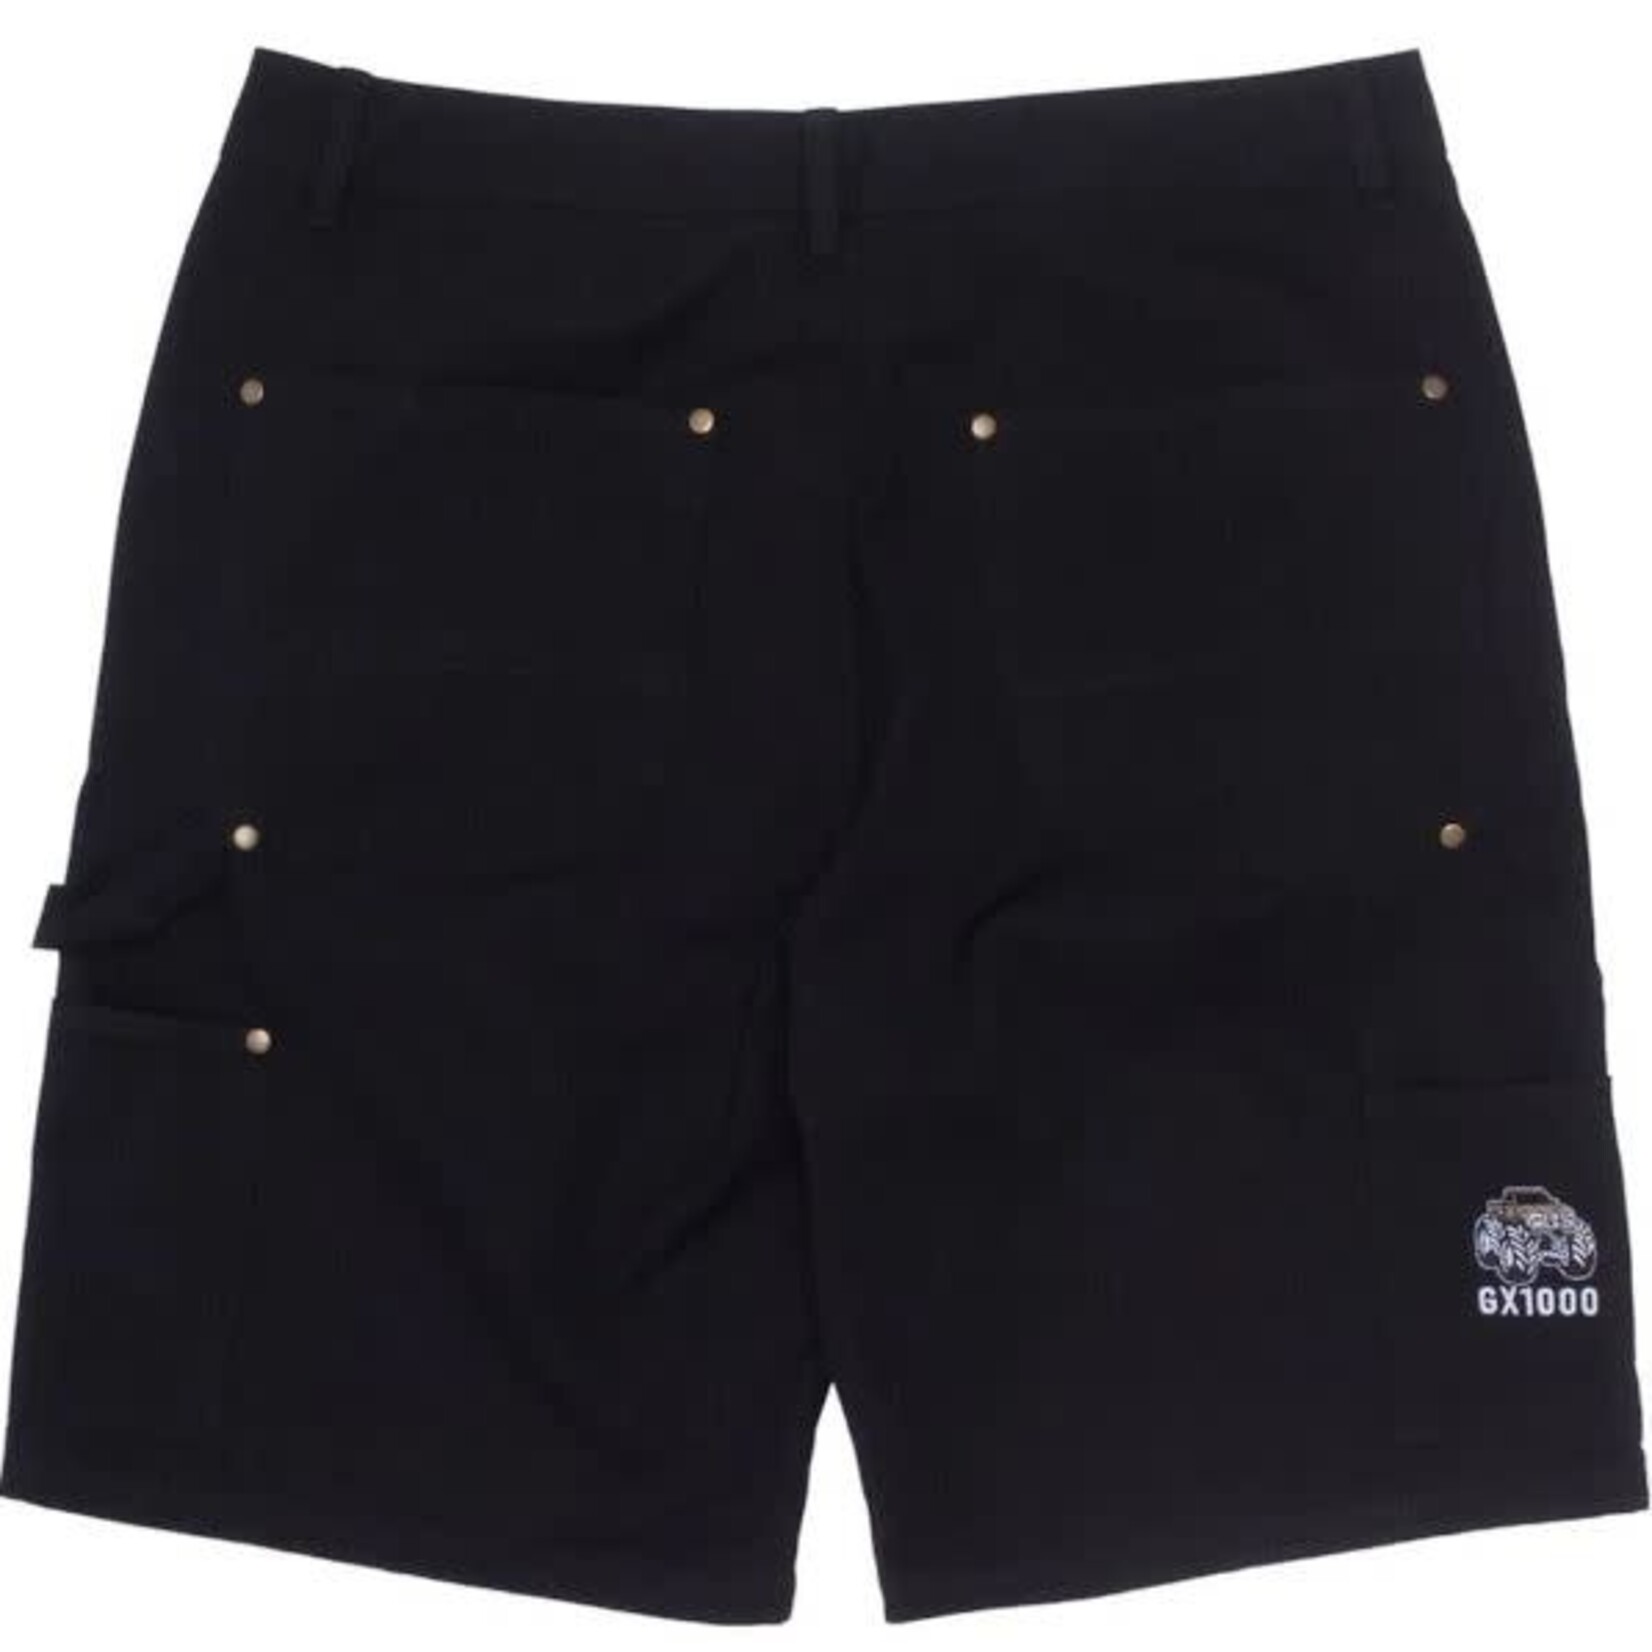 GX1000 Shorts-GX1000-Carpenter Short-Black